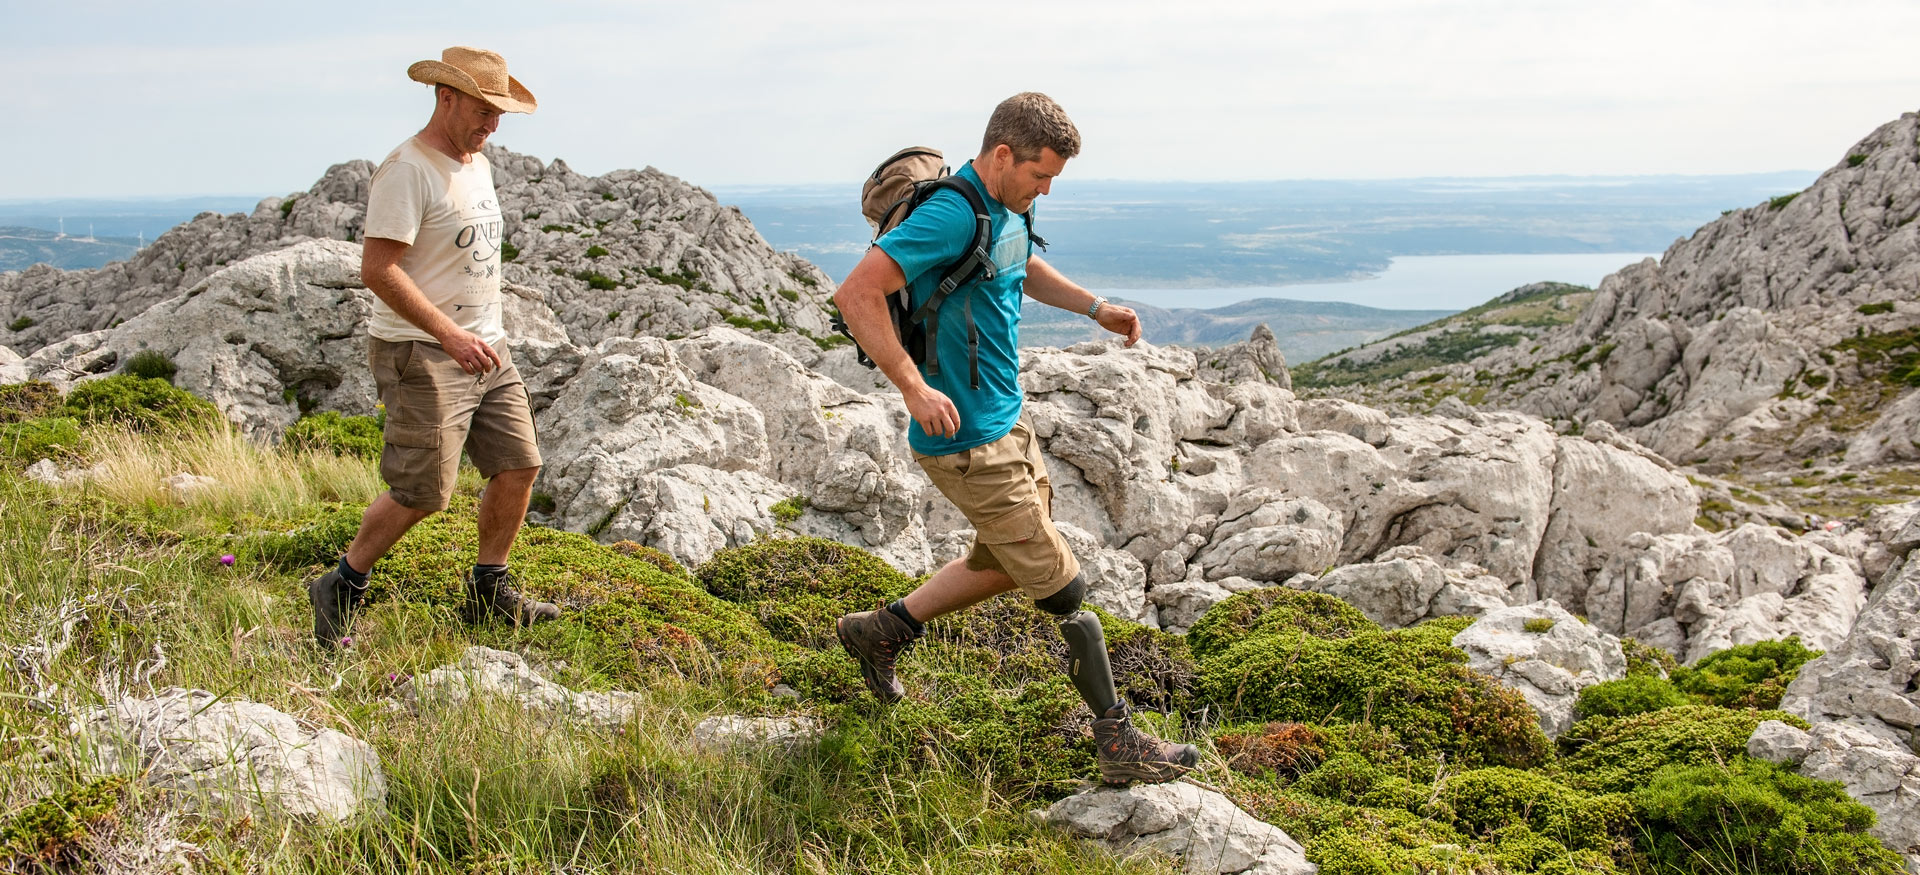 Zwei Männer wandern mit einer Beinprothese den Berg entlang